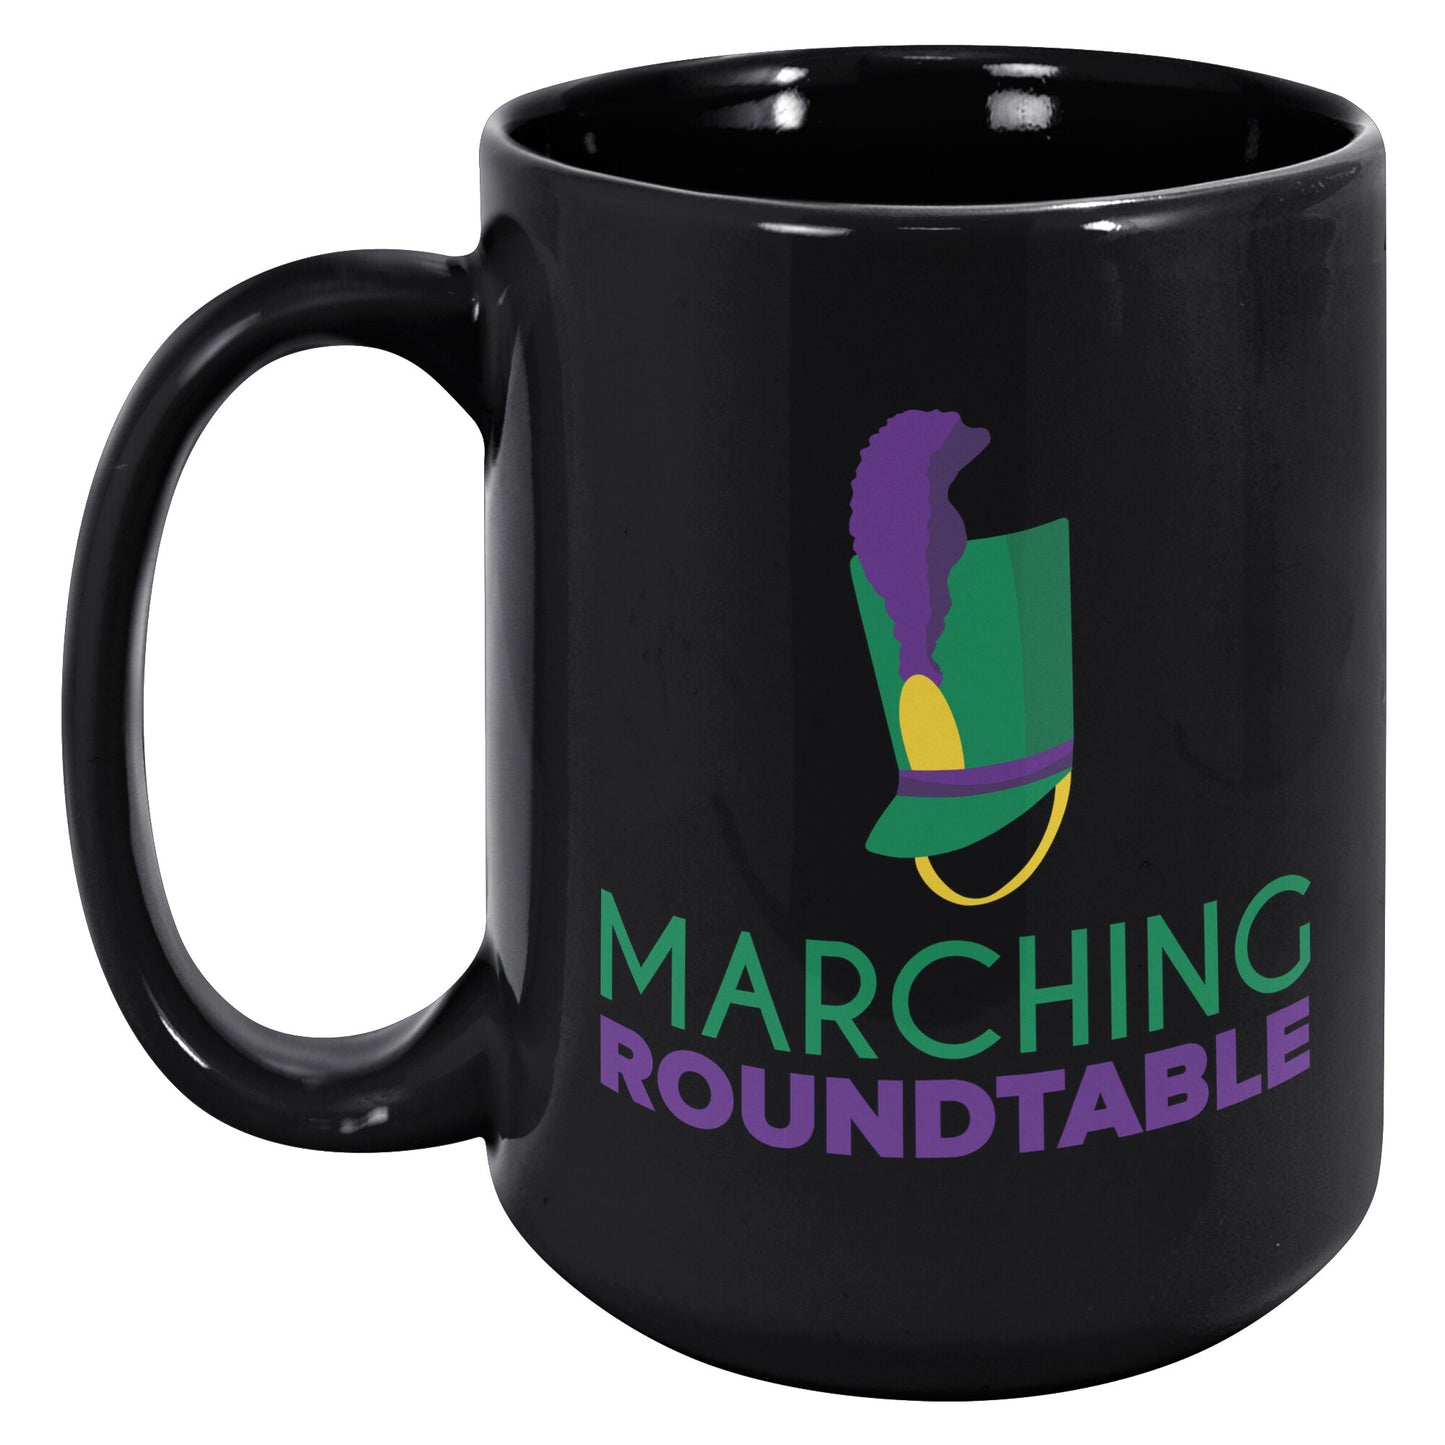 Black Roundtable Mug